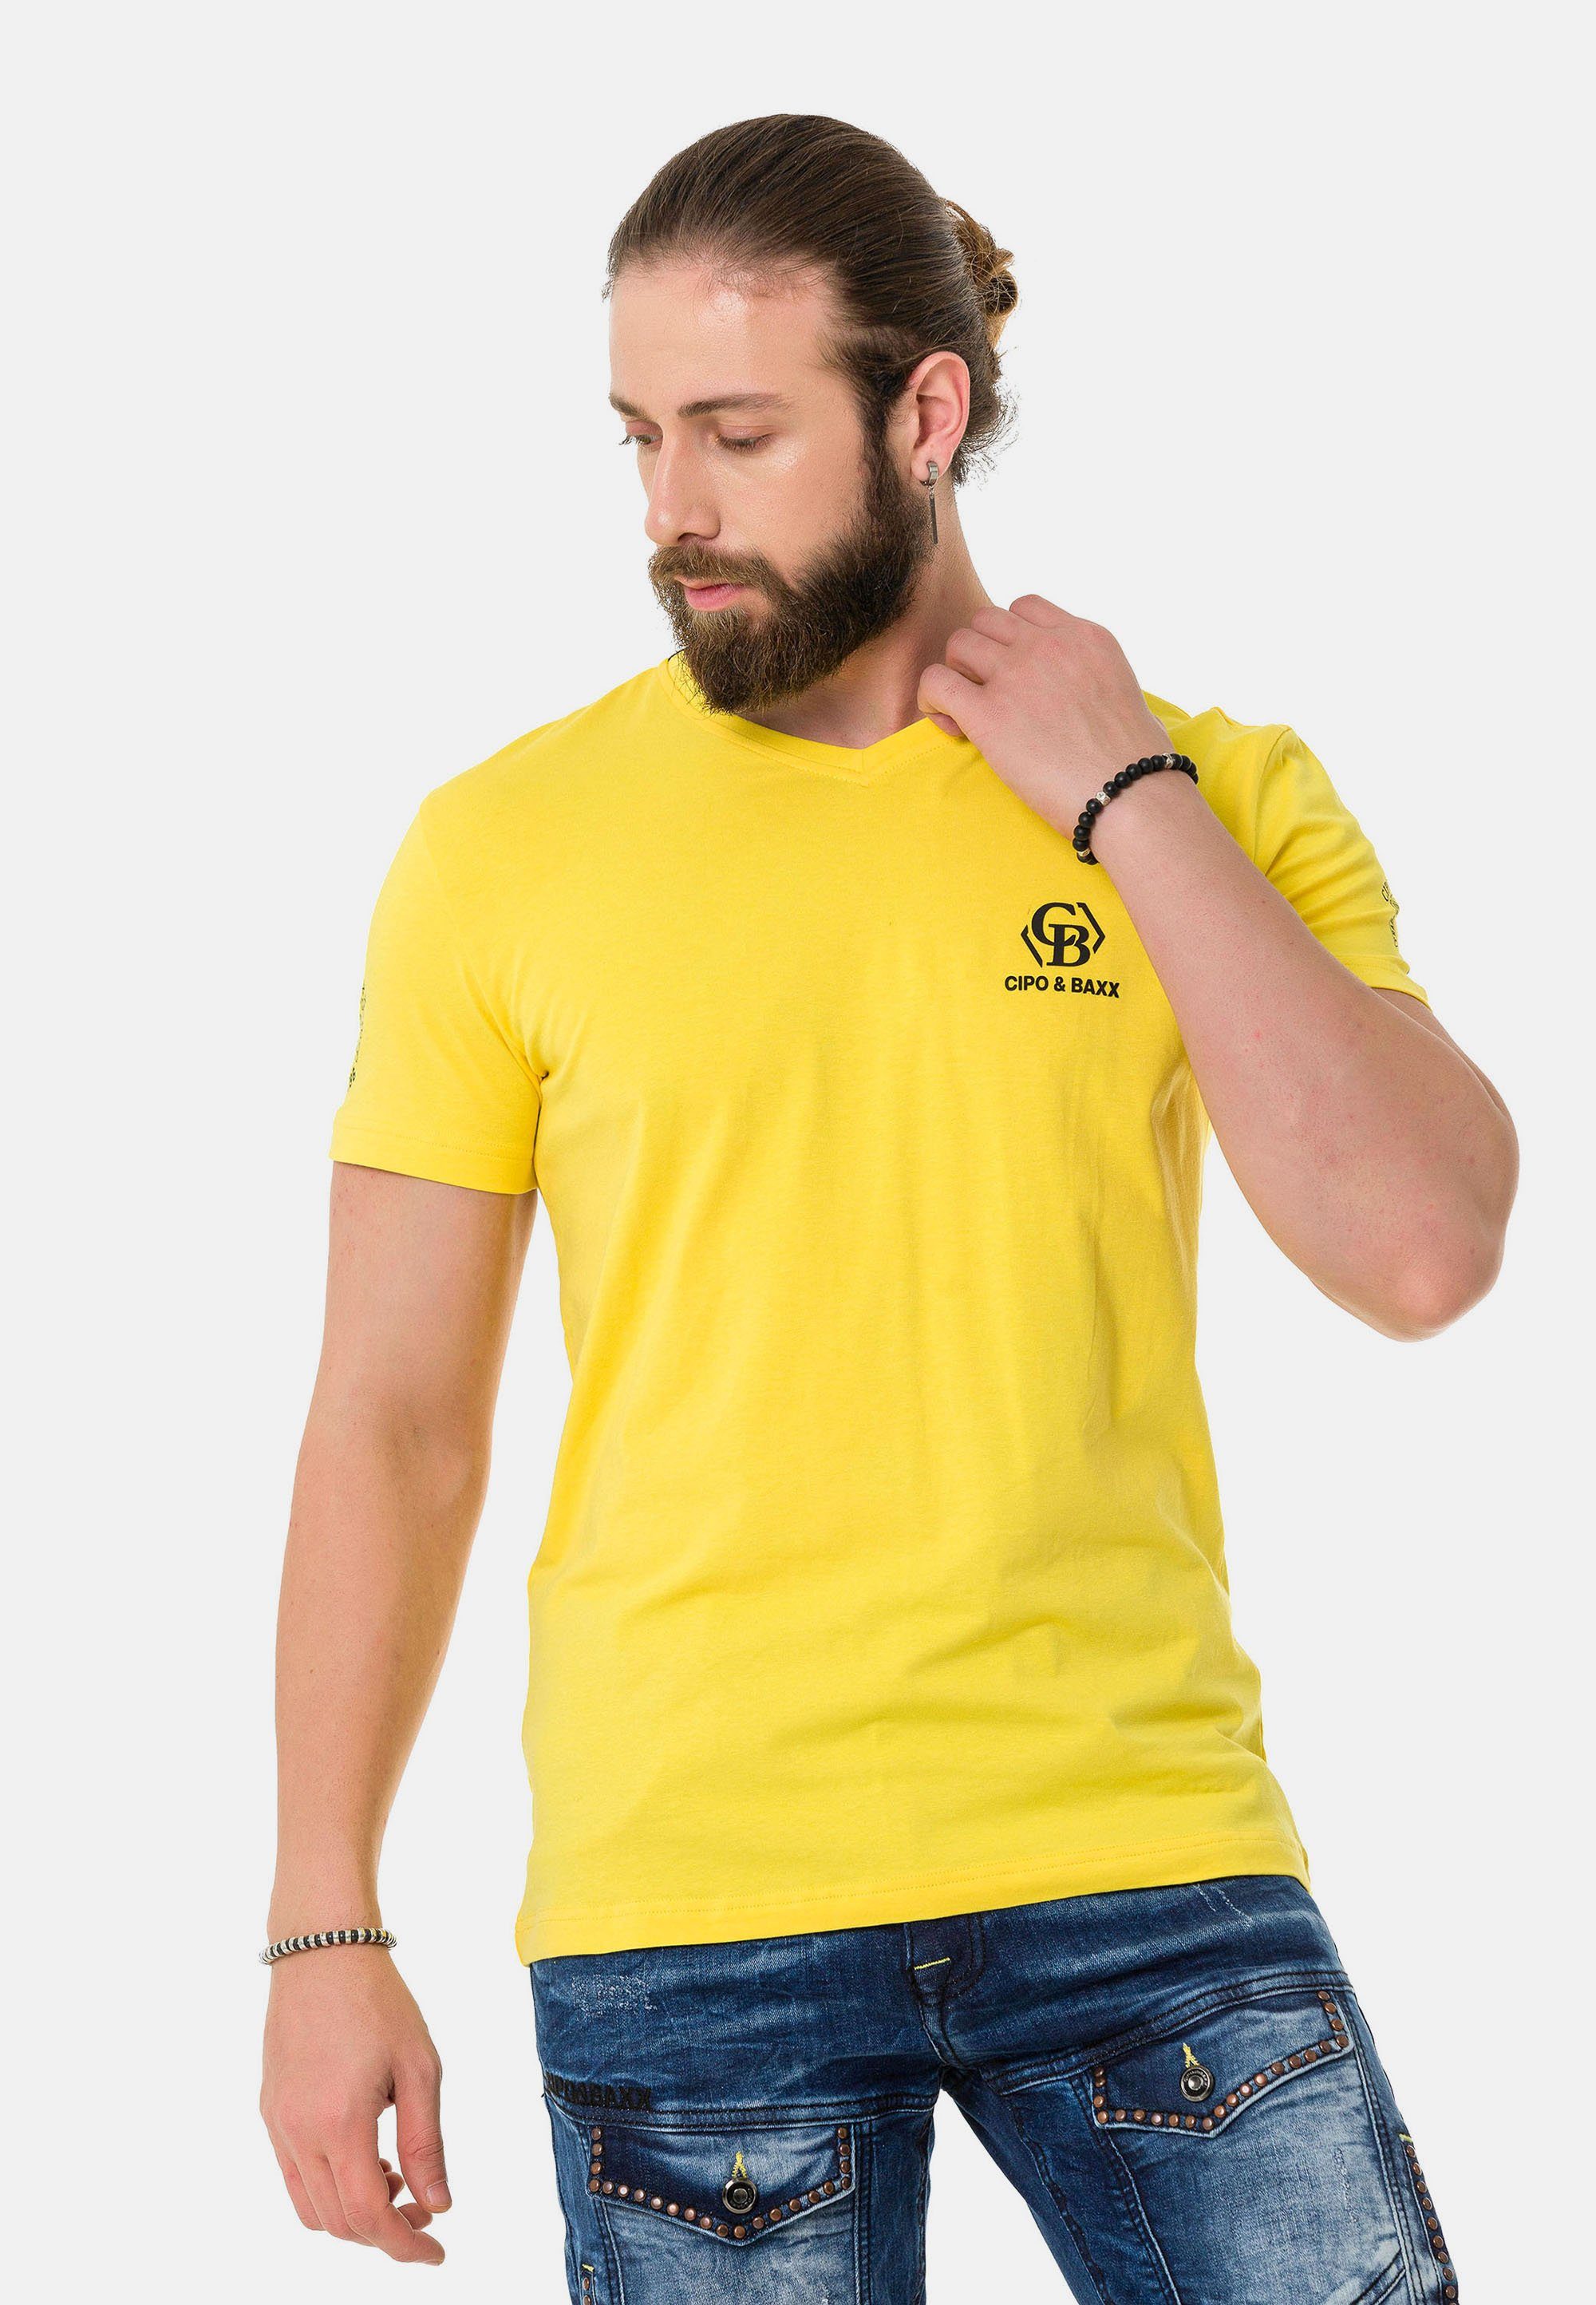 & Markenlogos Cipo dezenten Baxx T-Shirt mit gelb